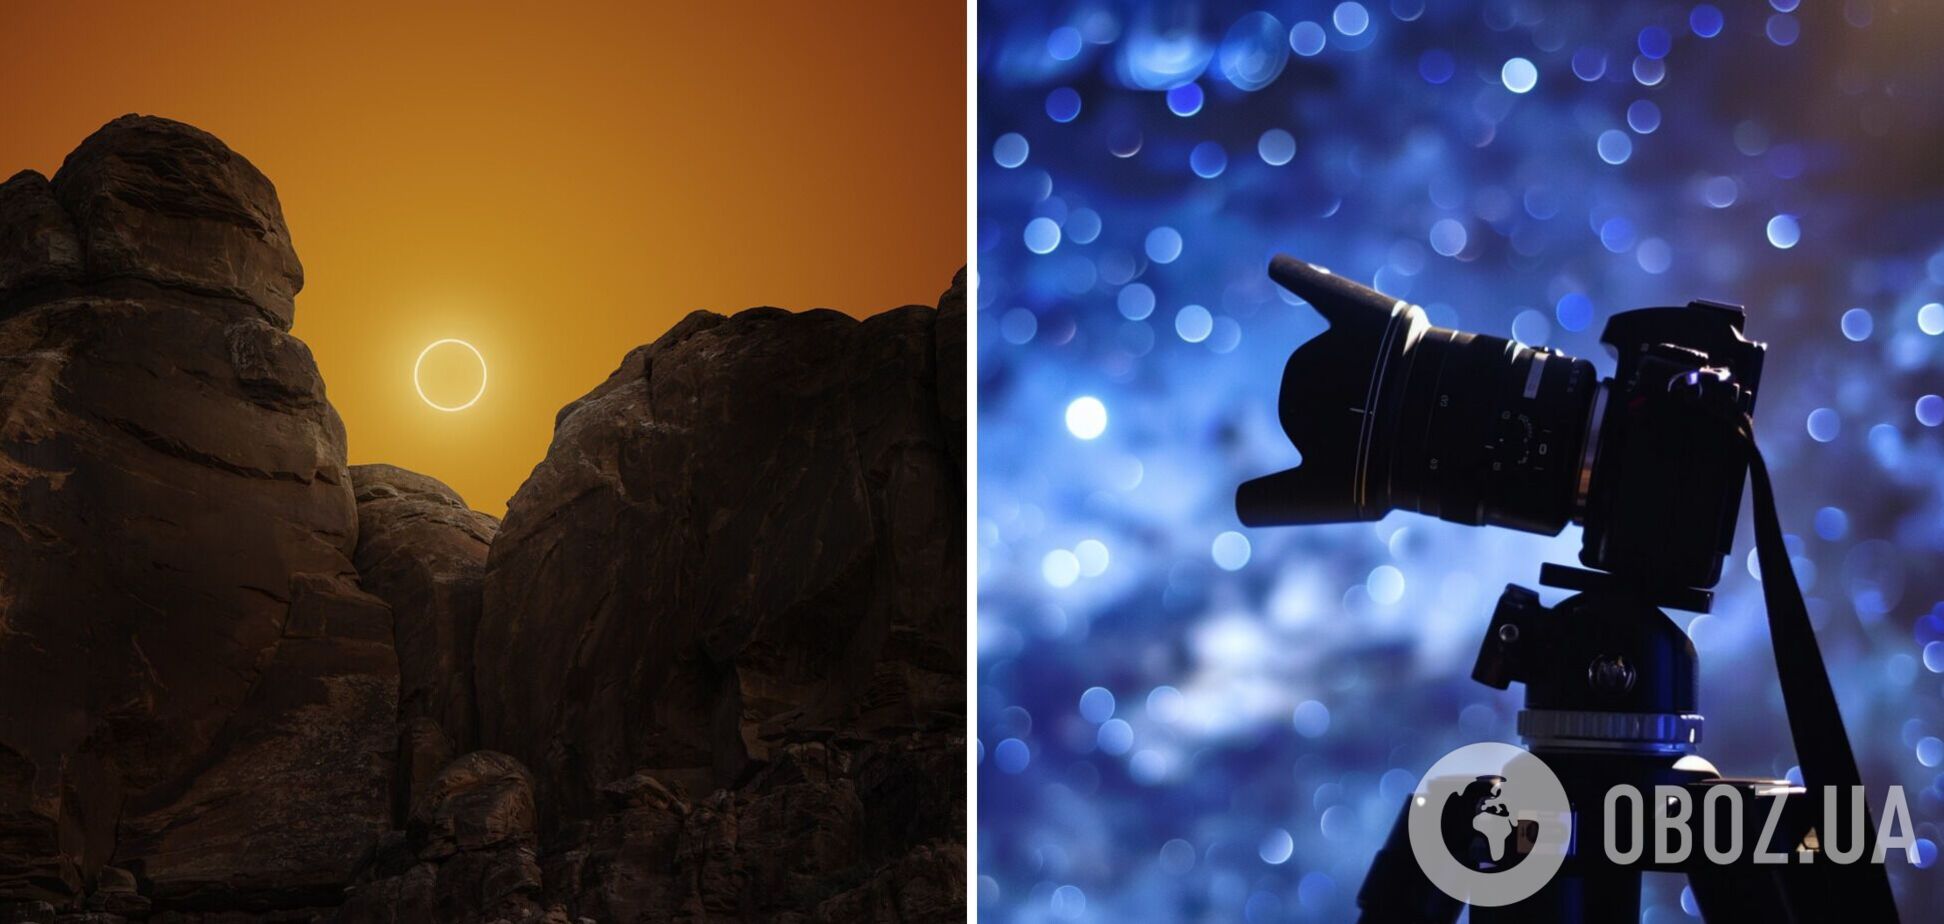 Астрофотограф показал фото солнечного затмения, которое создавали 5 месяцев: это похоже на другой мир